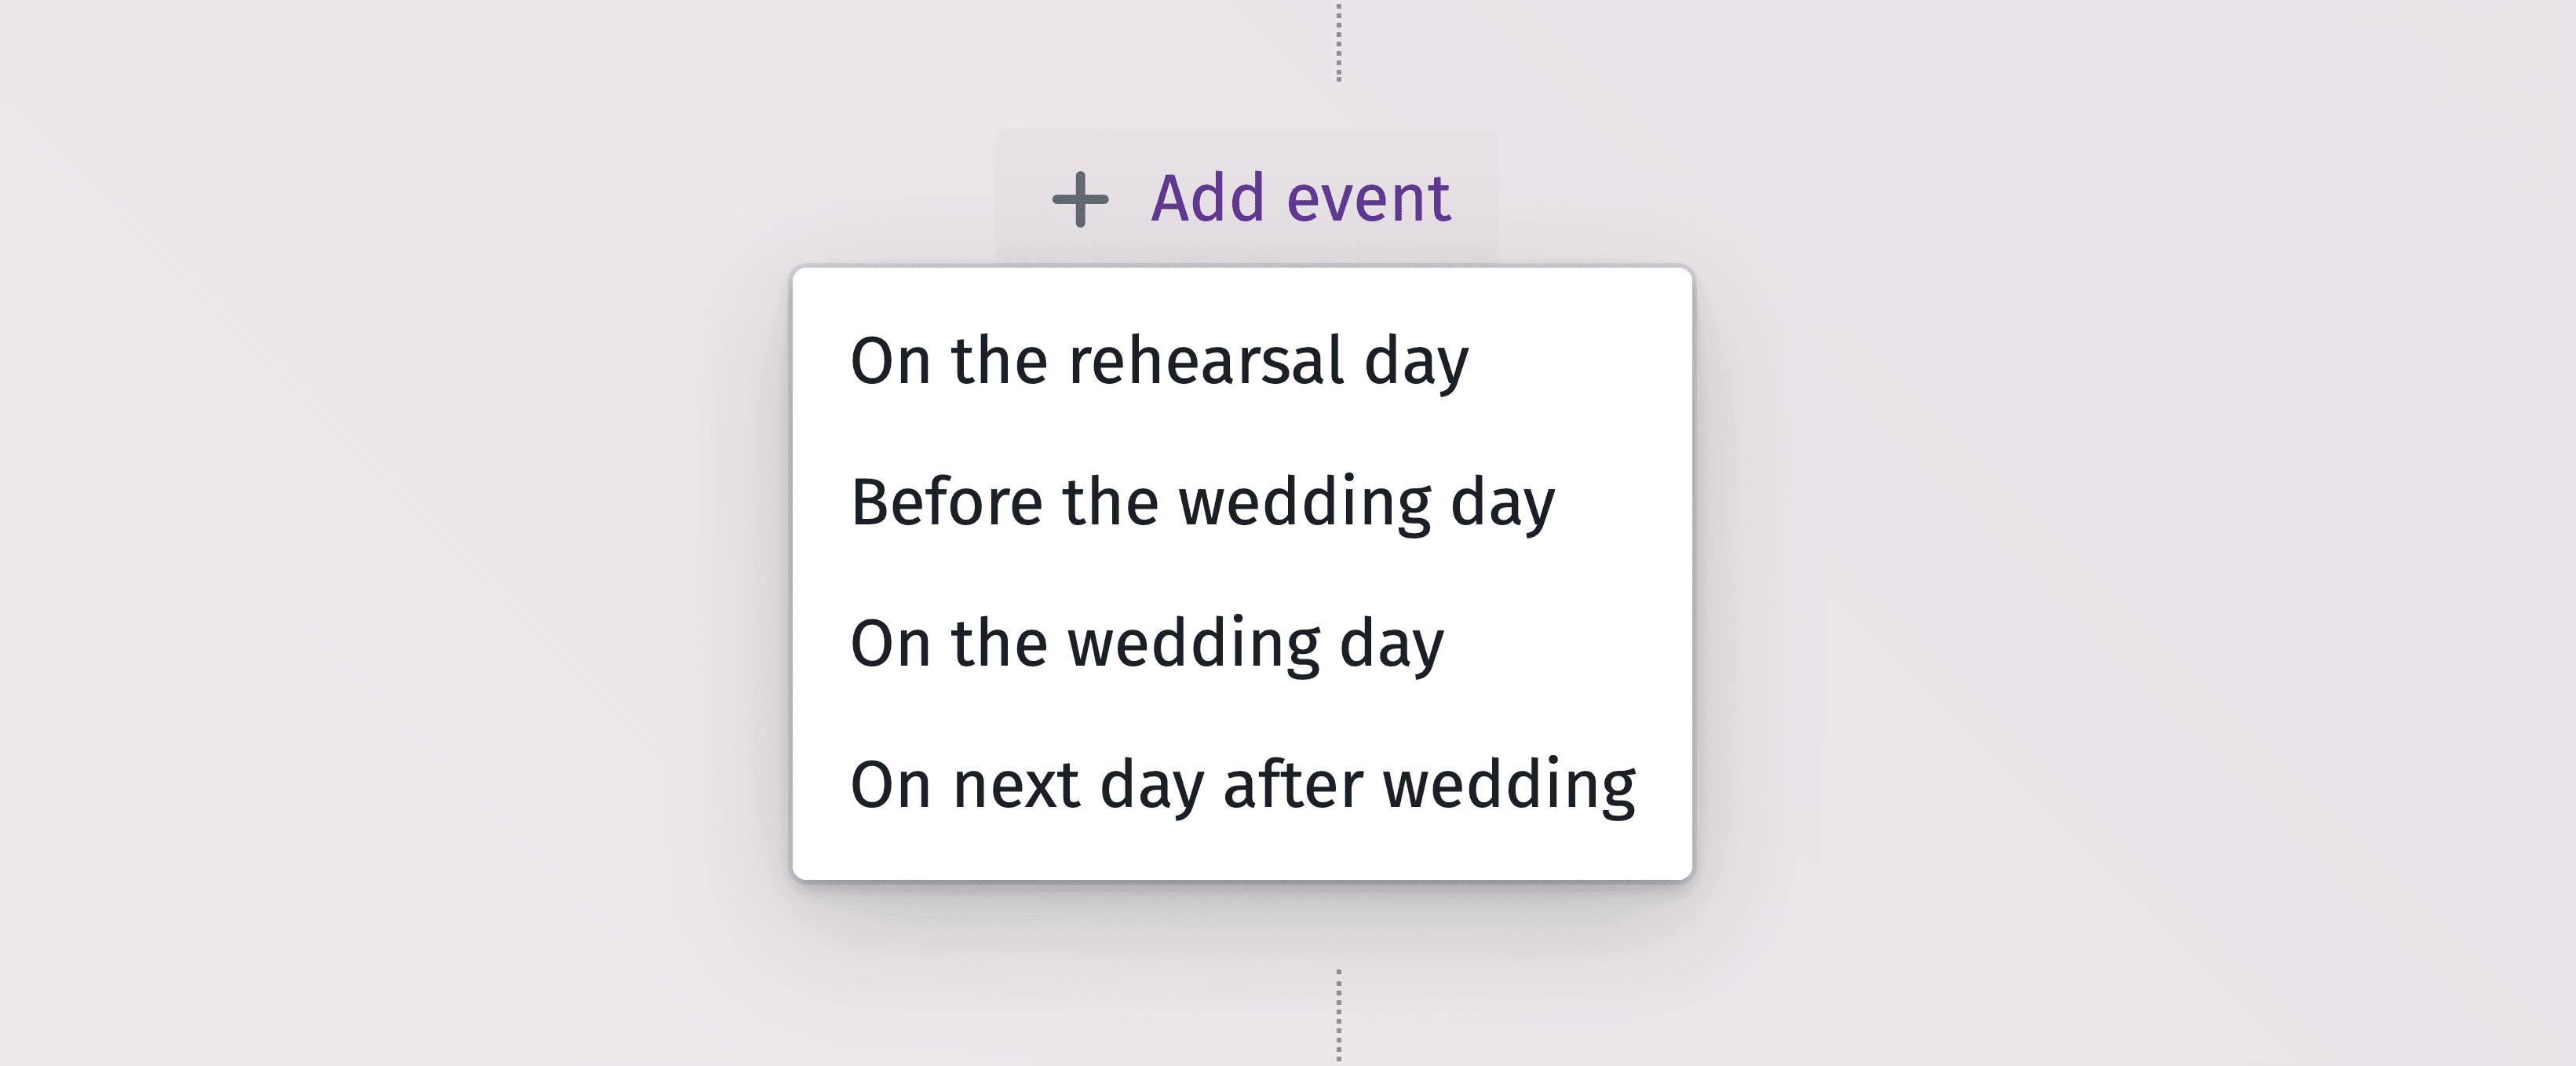 Podrobná grafická časová osa pro efektivní plánování každého okamžiku vašeho svatebního dne